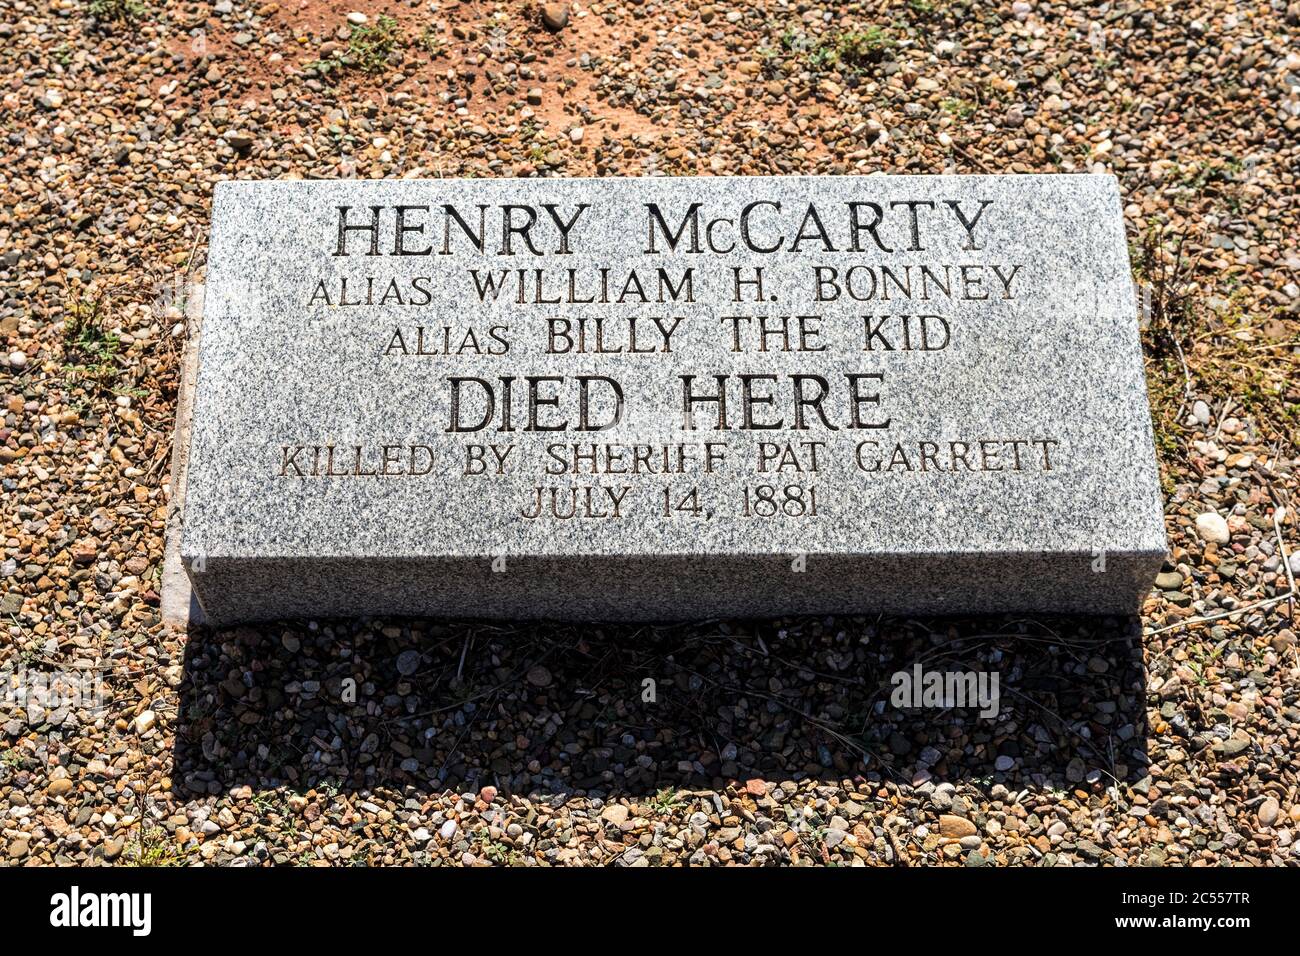 Billy The Kid est mort à cet endroit, photographié par le shérif Pat Garrett à fort Sumner, Nouveau-Mexique, États-Unis. Banque D'Images